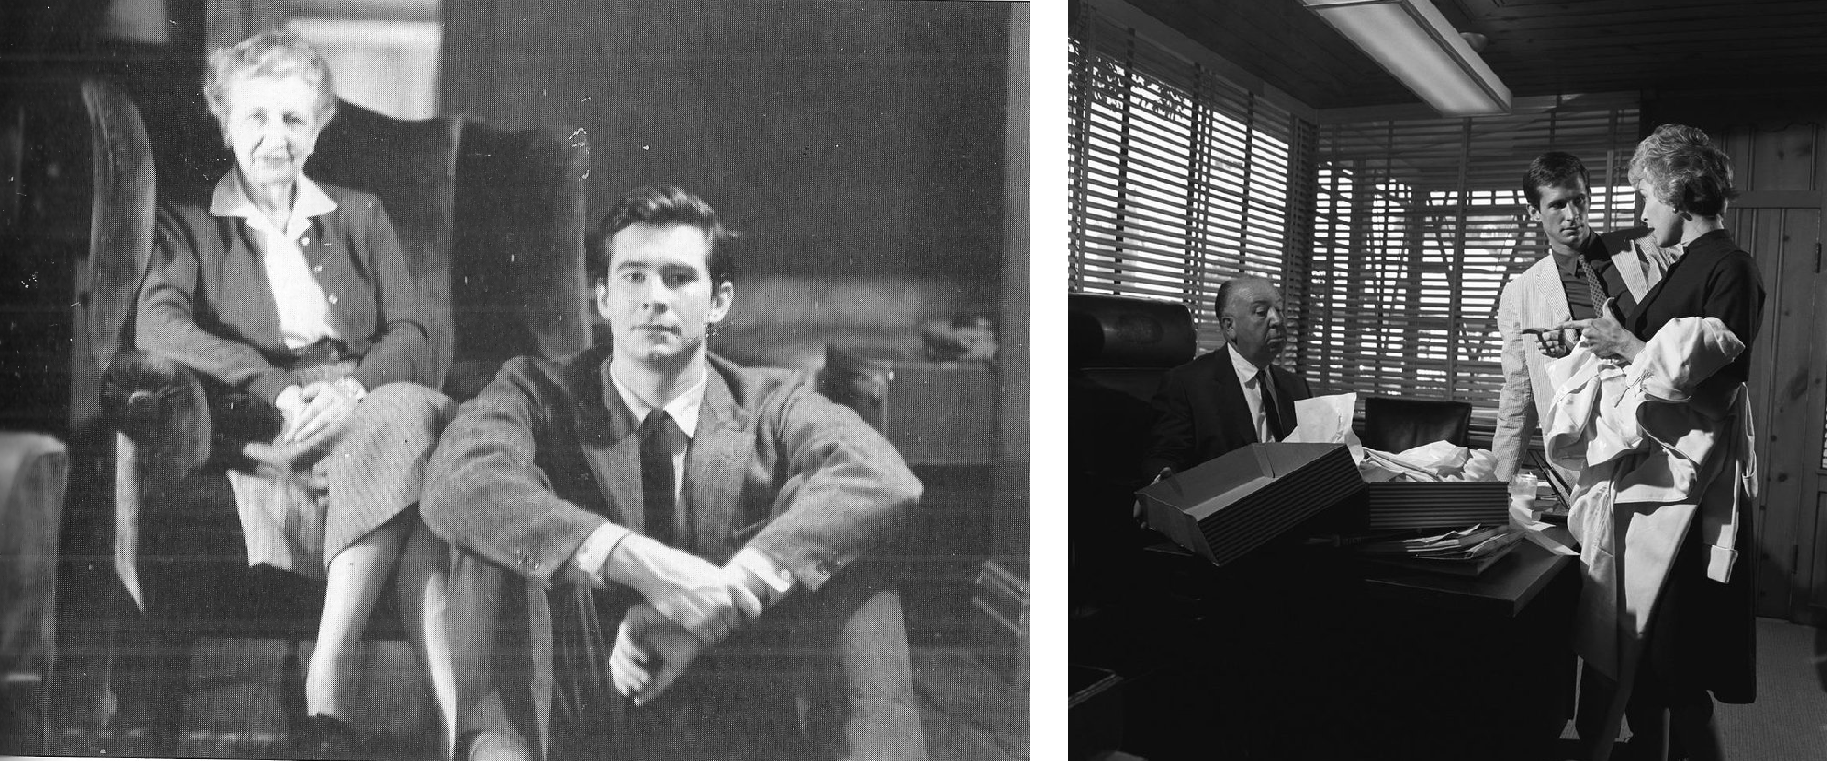 Anthony Perkins in 10½ Filmen, pt. I: Muttis Junge macht Karriere